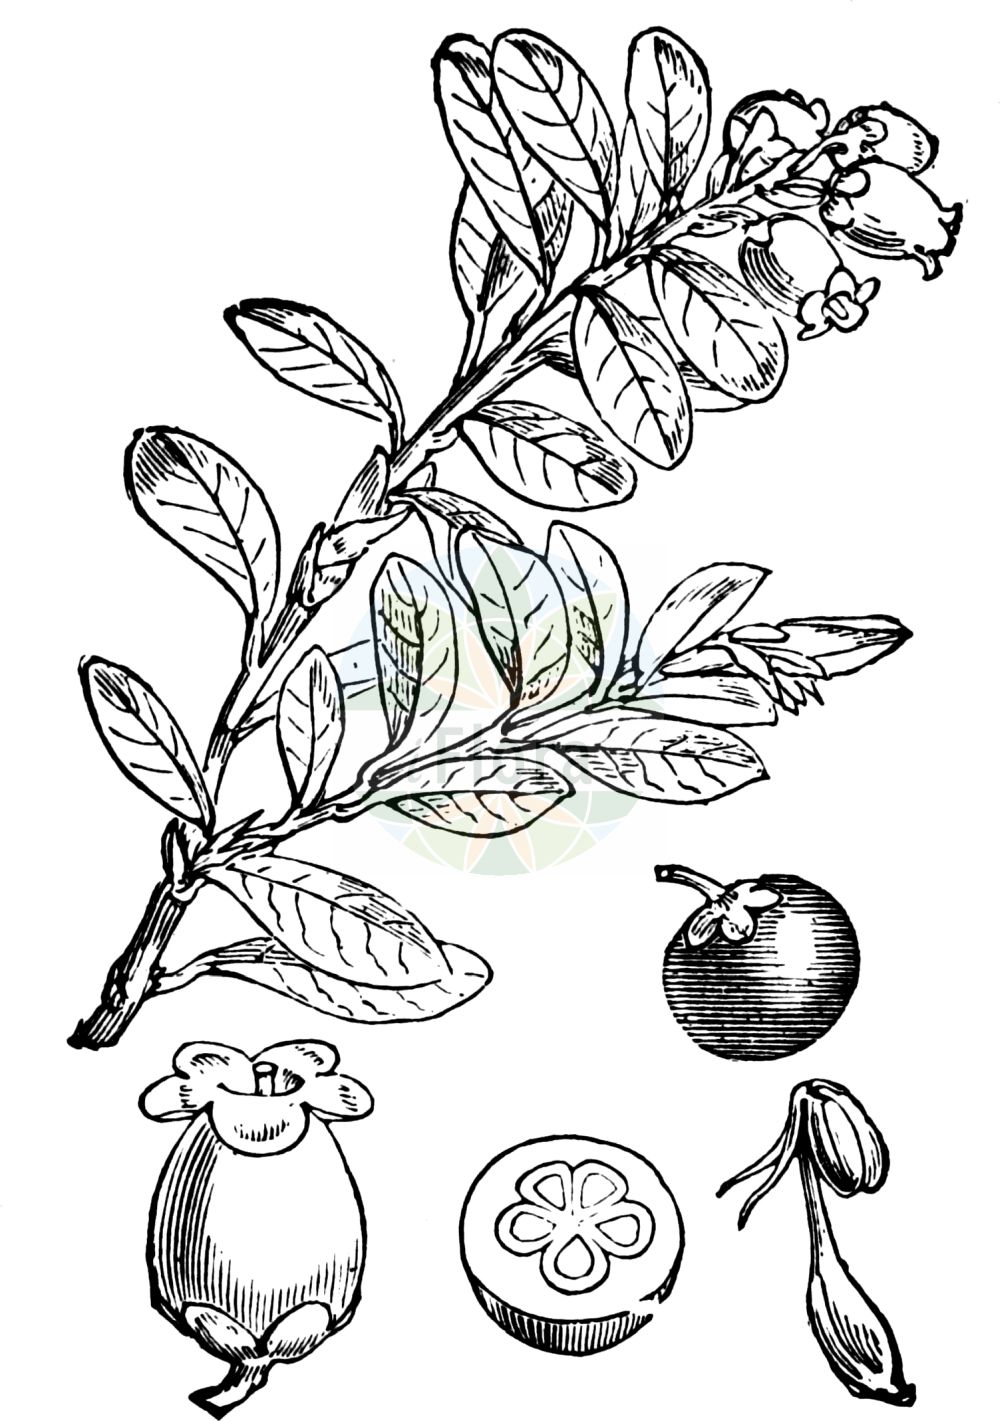 Historische Abbildung von Arctostaphylos uva-ursi (Immergrüne Bärentraube - Bearberry). Das Bild zeigt Blatt, Bluete, Frucht und Same. ---- Historical Drawing of Arctostaphylos uva-ursi (Immergrüne Bärentraube - Bearberry). The image is showing leaf, flower, fruit and seed.(Arctostaphylos uva-ursi,Immergrüne Bärentraube,Bearberry,Arbutus uva-ursi,Arctostaphylos uva-ursi,Immergruene Baerentraube,Arznei-Baerentraube,Sandbeere,Wolfsbeere,Bearberry,Kinnikinnick,Bear's Grape,Common Bearberry,Creashak,Hog Cranberry,Kinnikinick,Mealberry,Mountain Box,Red Bearberry,Sandberry,Arctostaphylos,Bärentraube,Manzanita,Ericaceae,Heidekrautgewächse,Heath family,Blatt,Bluete,Frucht,Same,leaf,flower,fruit,seed,Fitch et al. (1880))